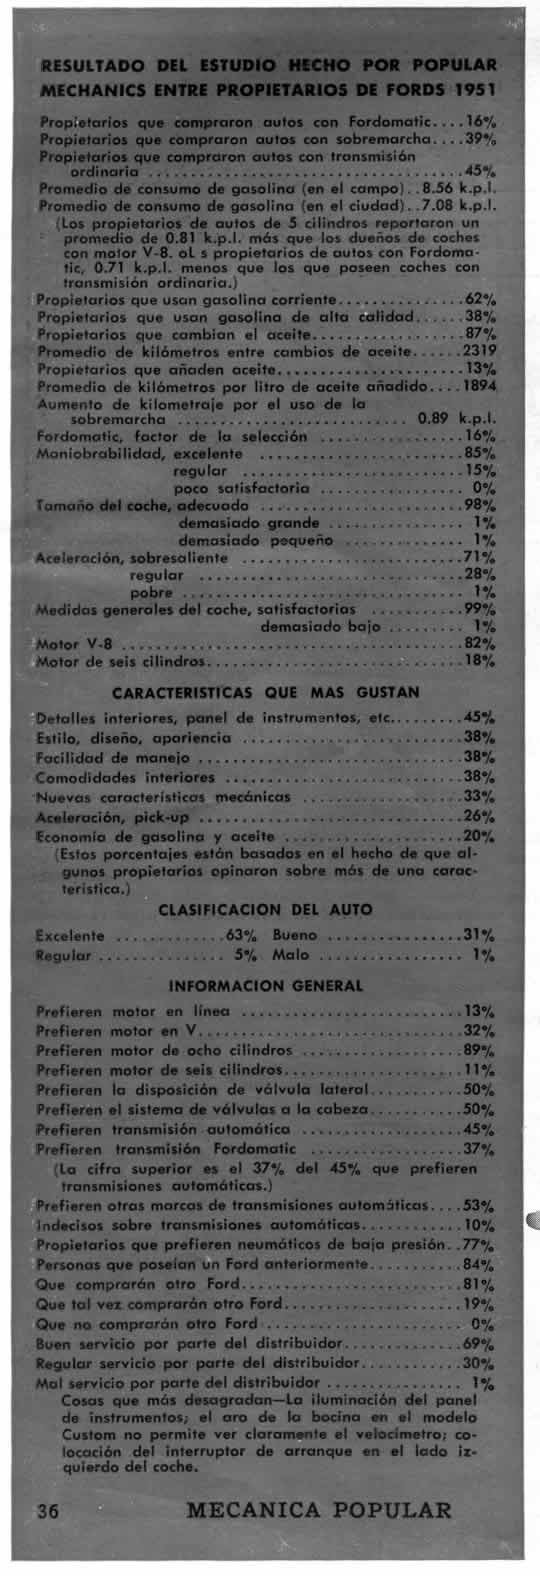 RESULTADO DEL ESTUDIO HECHO POR POPULAR MECHANICS ENTRE PROPIETARIOS DE FORDS 1951